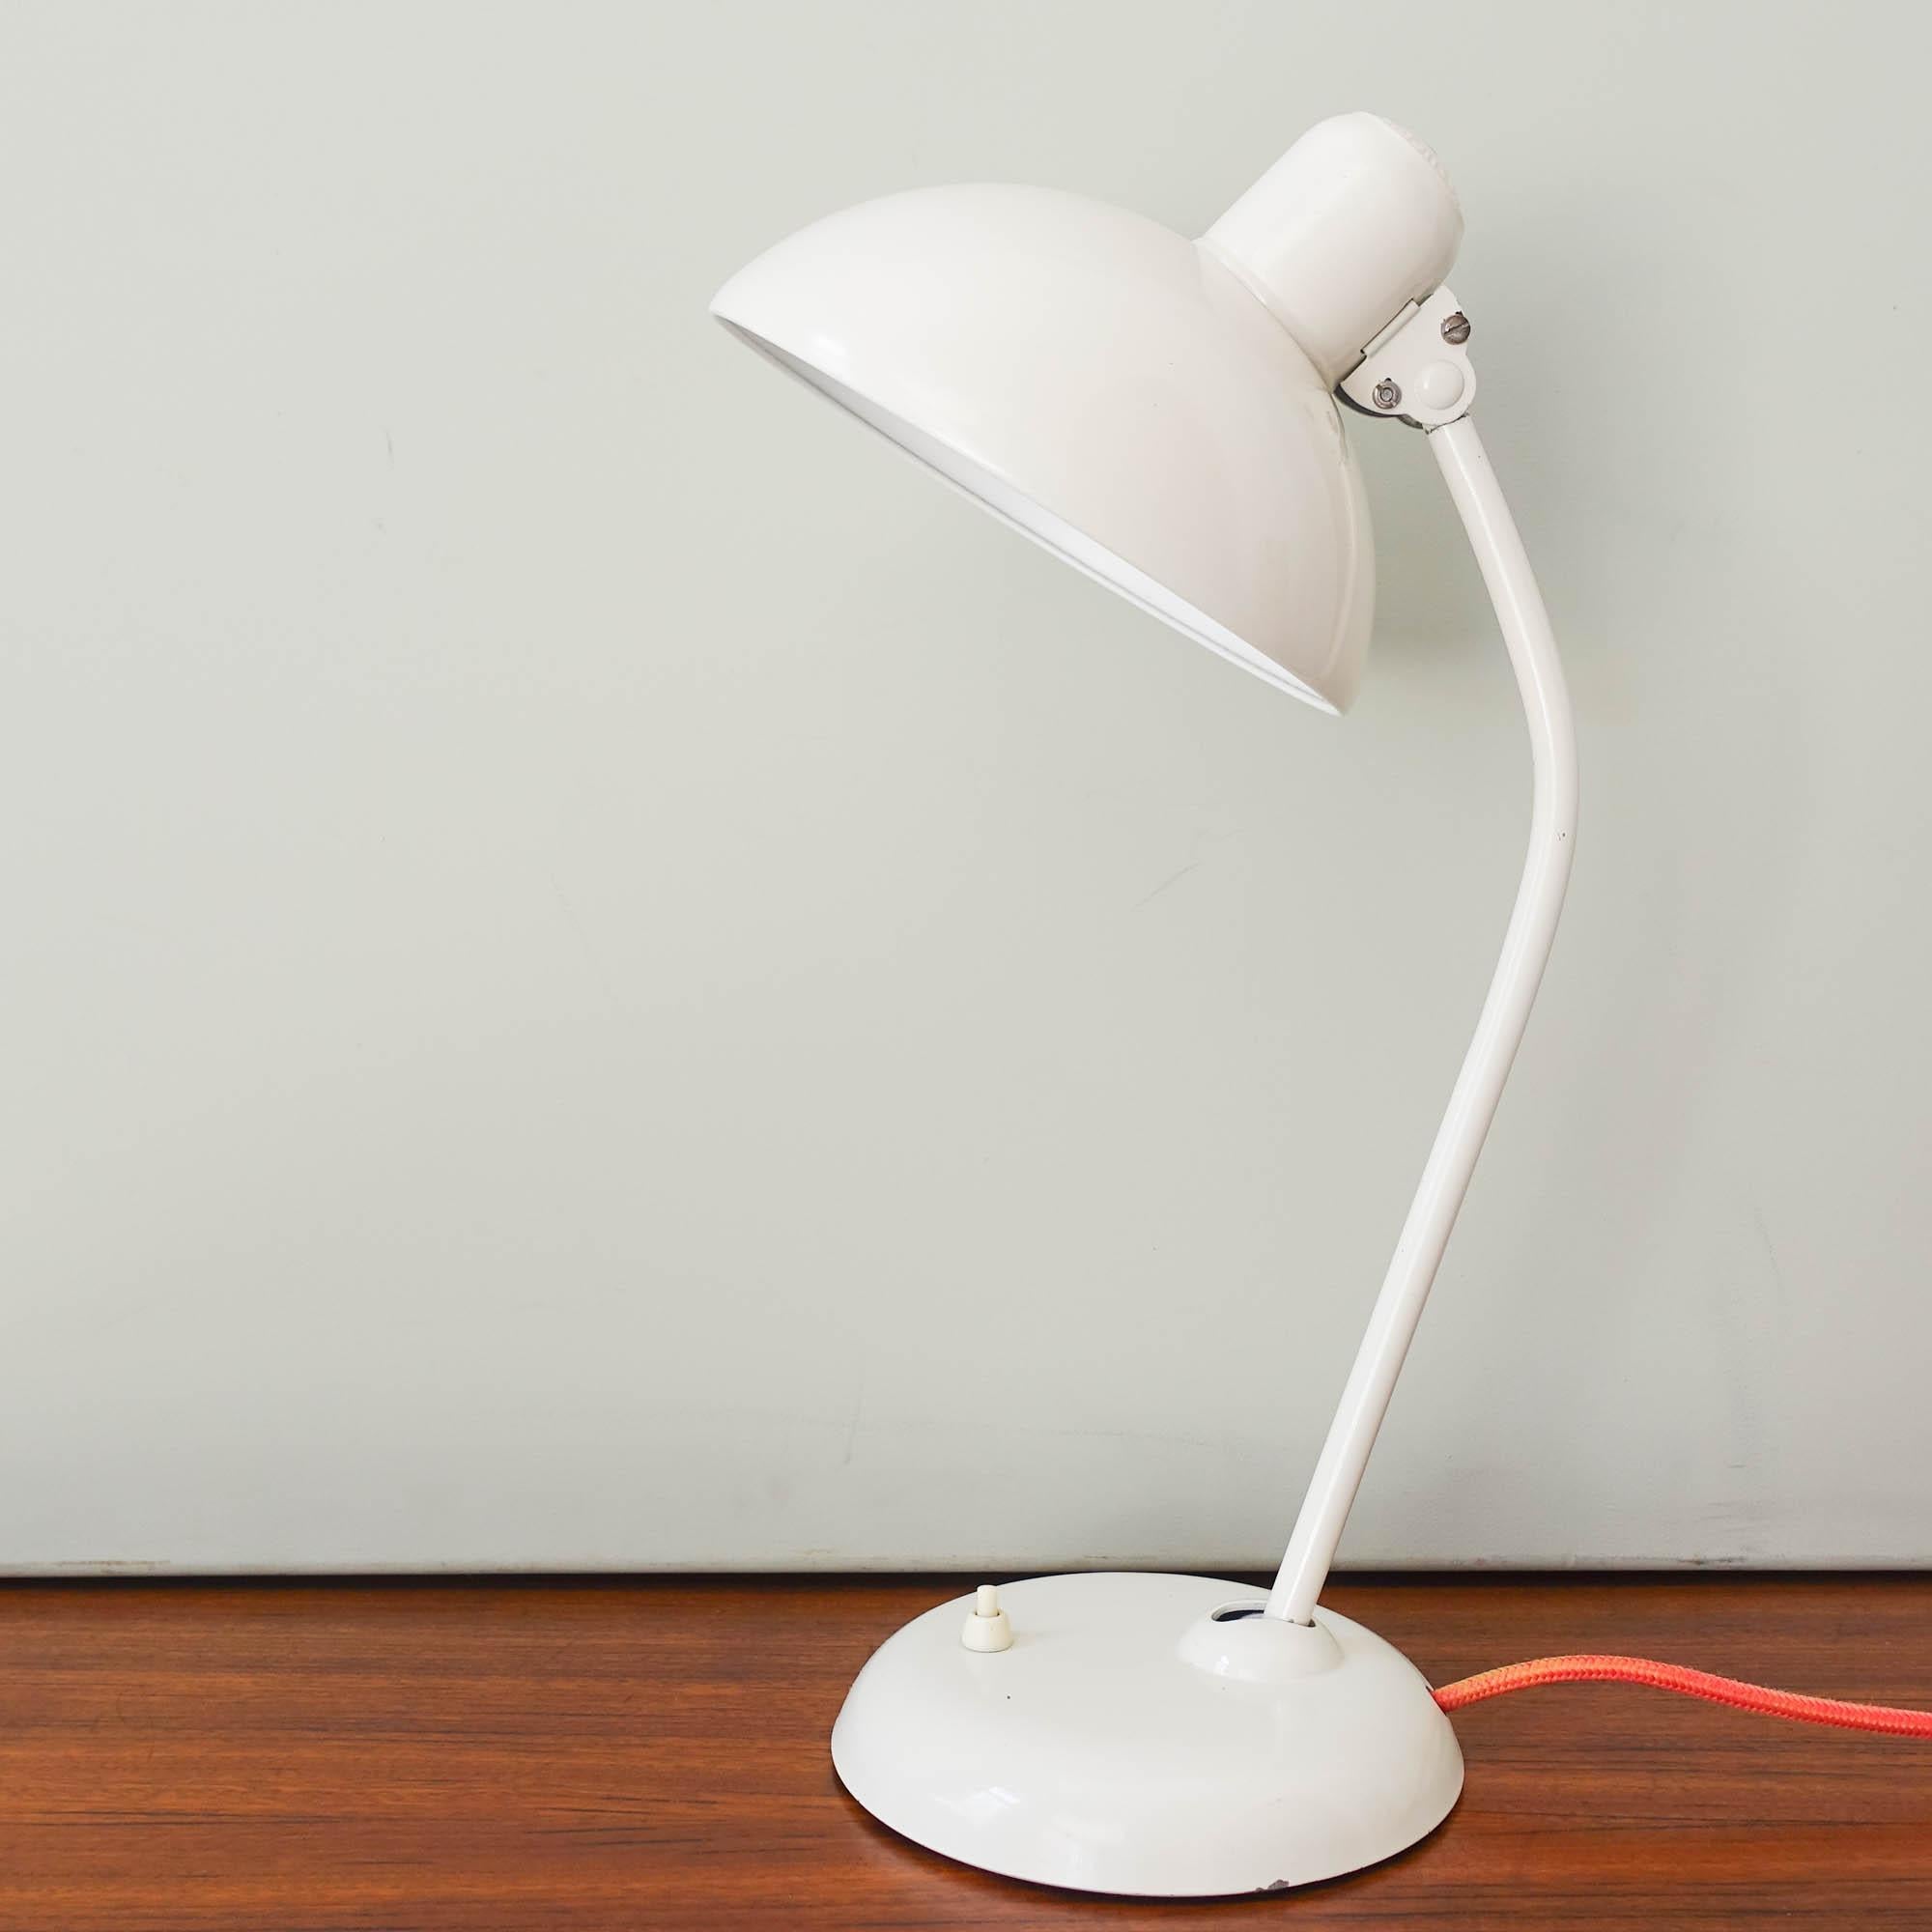 La lampe de bureau modèle 6556 a été conçue par Christian Dell et fabriquée par Kaiser Idell, en Allemagne, dans les années 1930. Elle est dotée d'un abat-jour réglable en métal laqué blanc, avec une tige blanche ajustable, fixée à un socle en